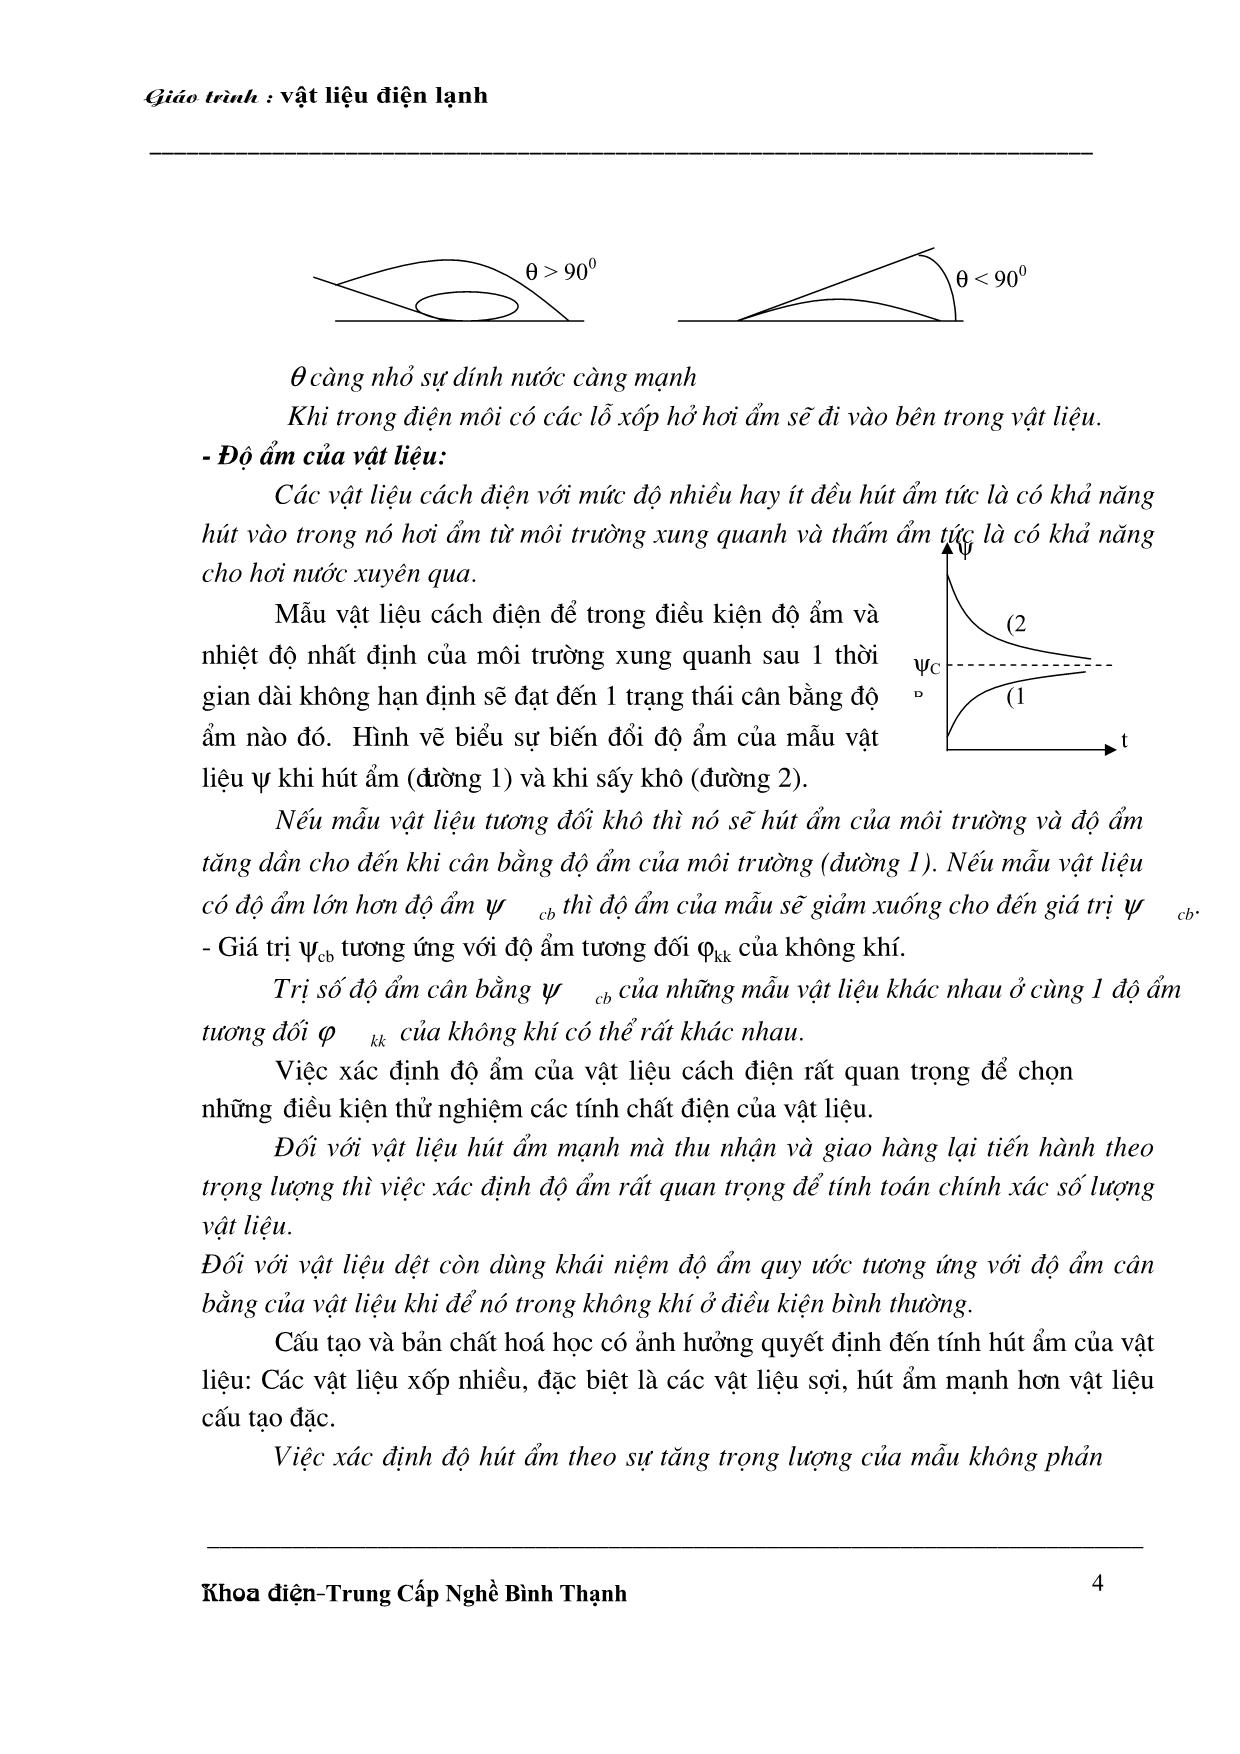 Giáo trình môn Vật liệu điện lạnh trang 4